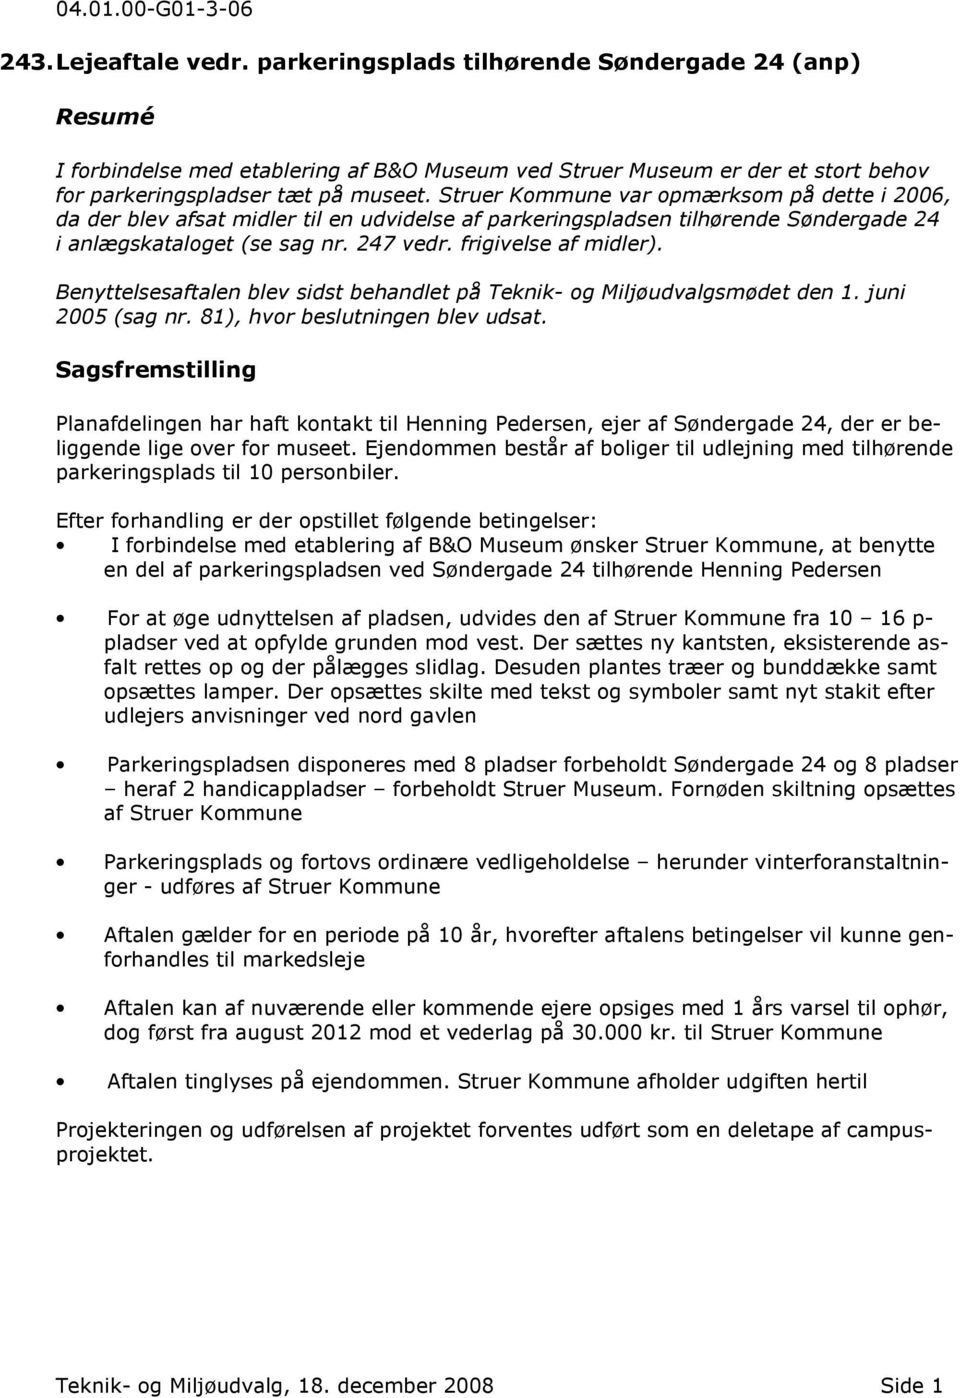 Struer Kommune var opmærksom på dette i 2006, da der blev afsat midler til en udvidelse af parkeringspladsen tilhørende Søndergade 24 i anlægskataloget (se sag nr. 247 vedr. frigivelse af midler).